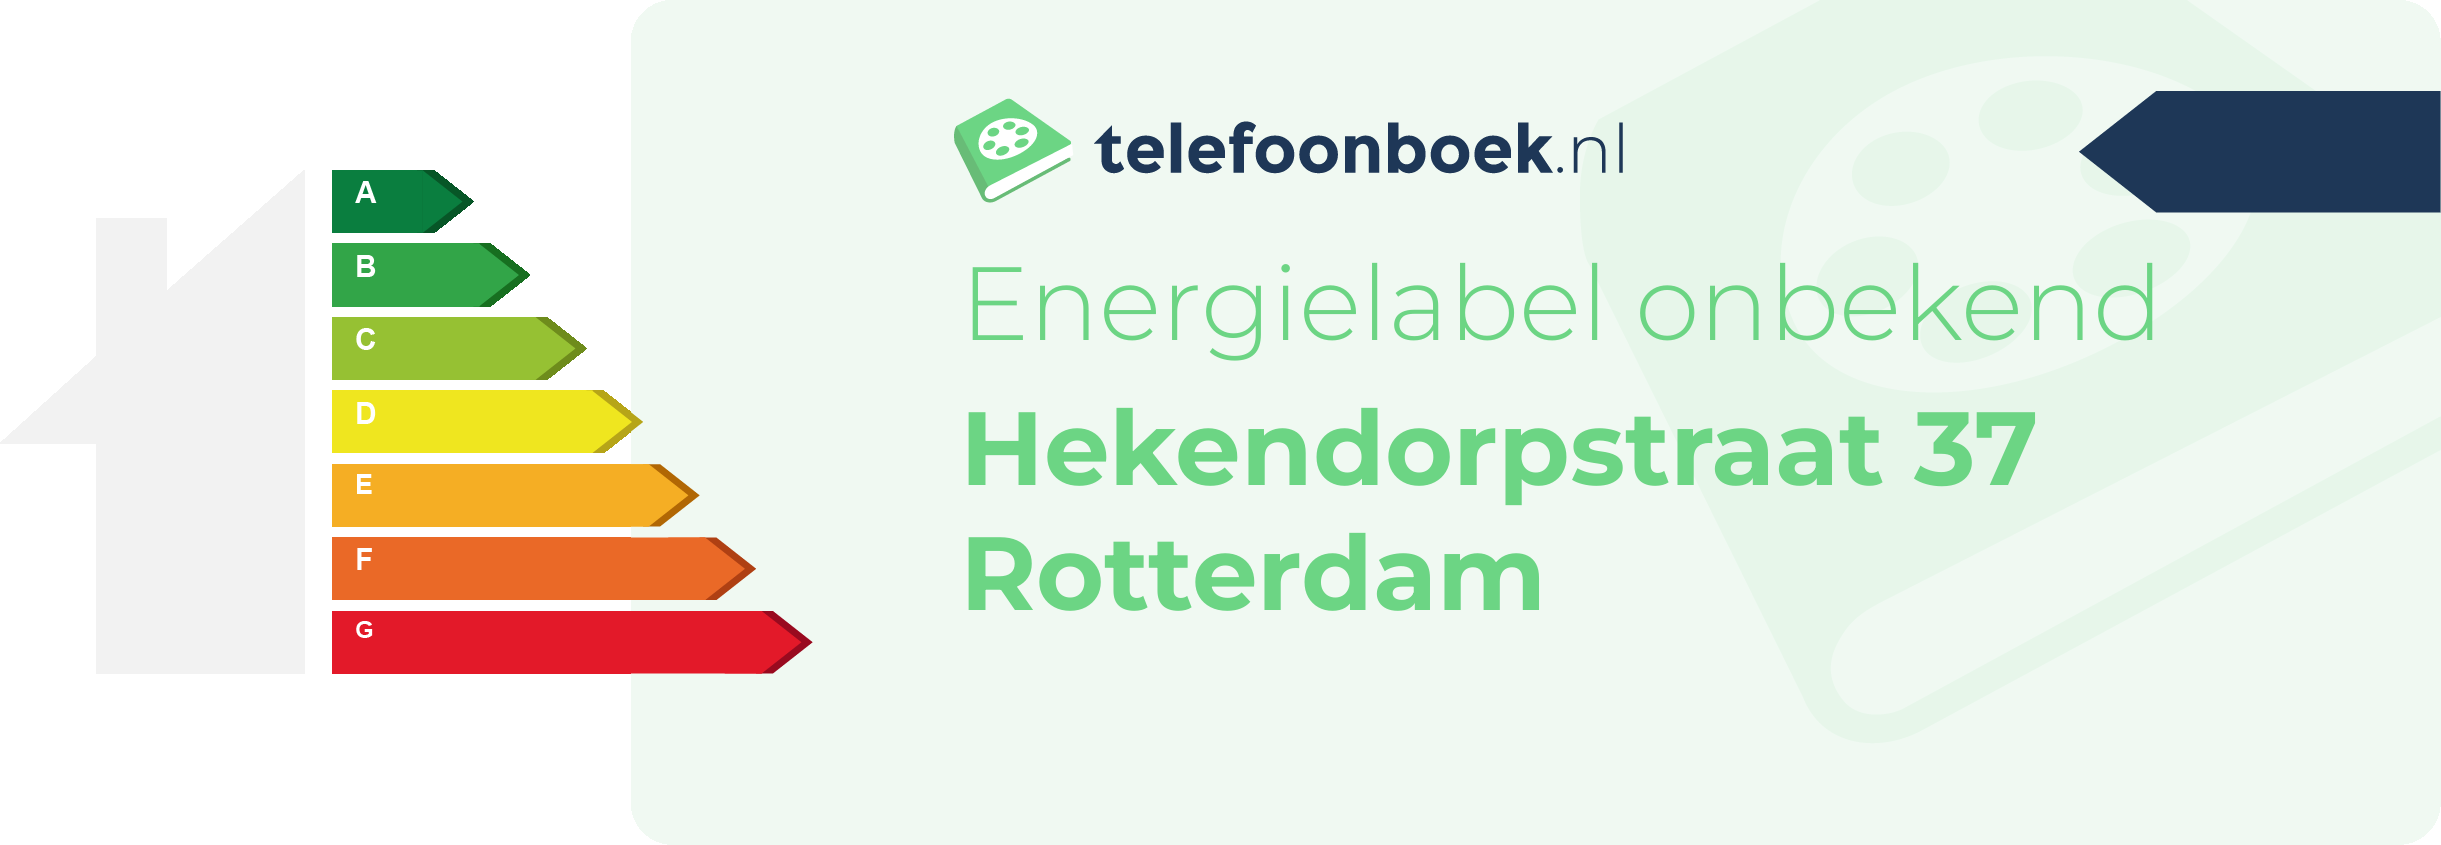 Energielabel Hekendorpstraat 37 Rotterdam